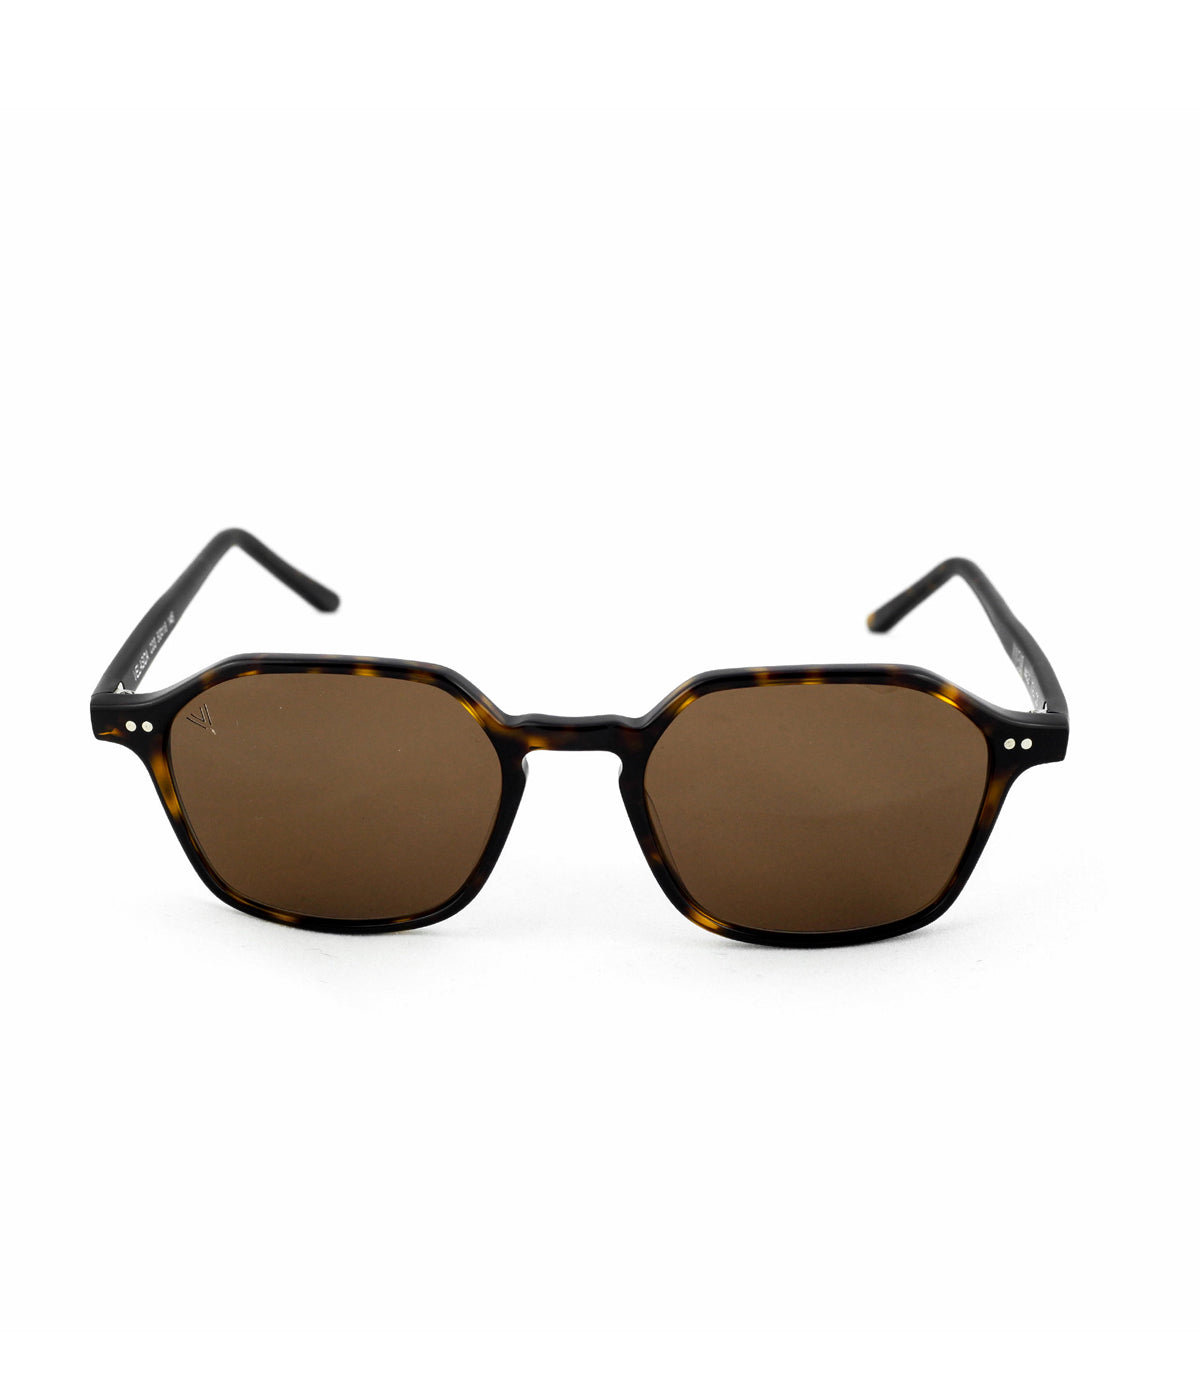 Velasca Sunglasses in Dark Avana & Brown